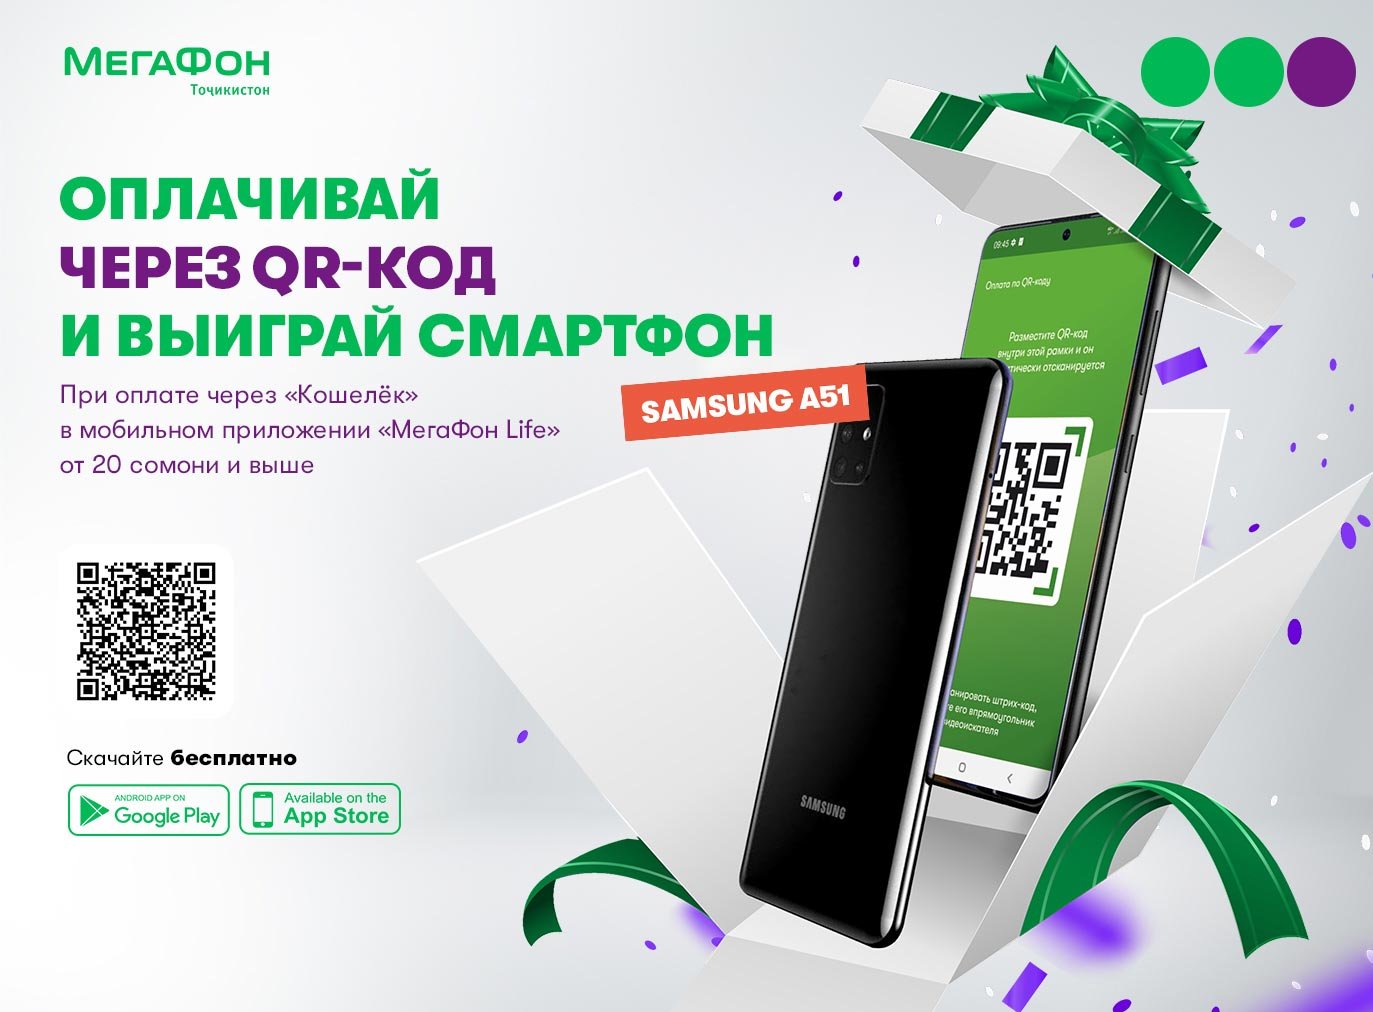 МегаФон Таджикистан дарит смартфоны за оплату в «Кошельке» с помощью QR